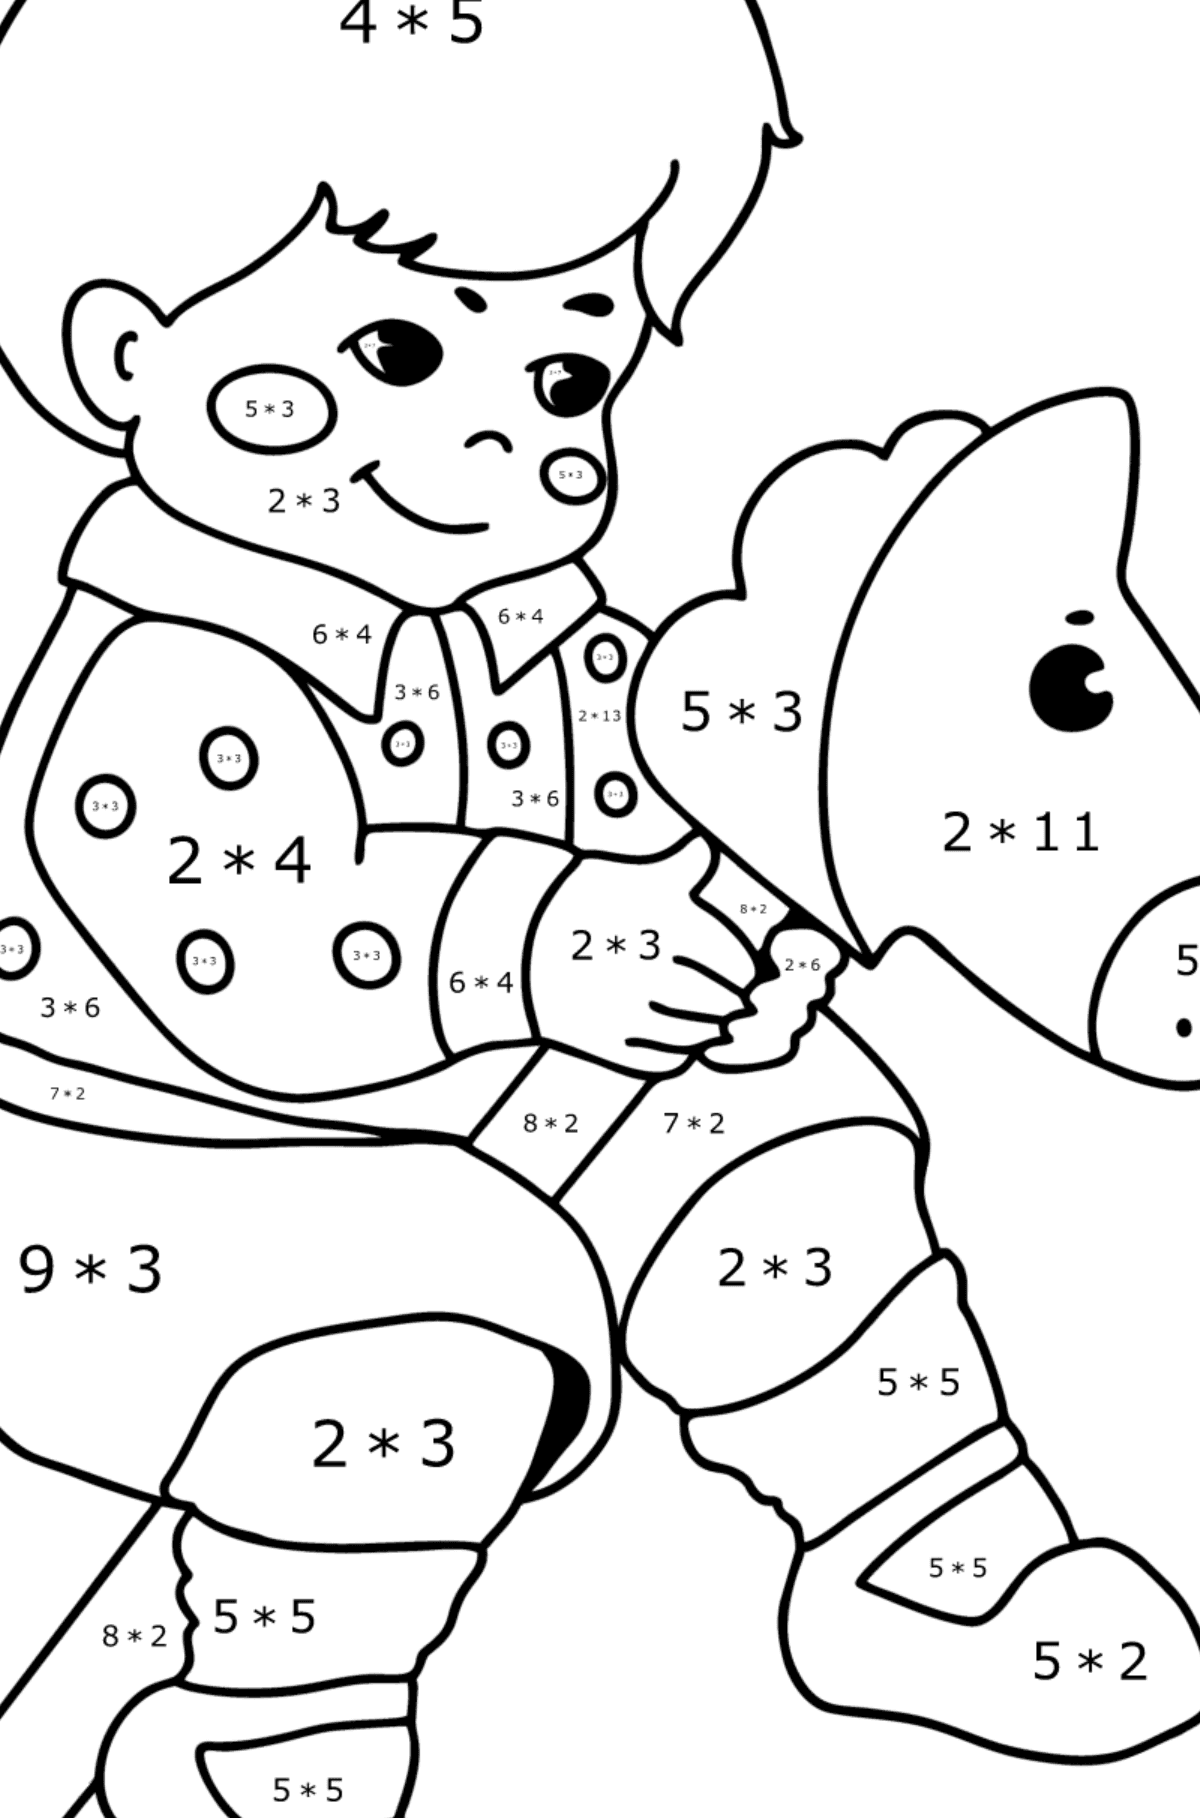 Desenho Menino e cavalo para colorir - Colorindo com Matemática - Multiplicação para Crianças